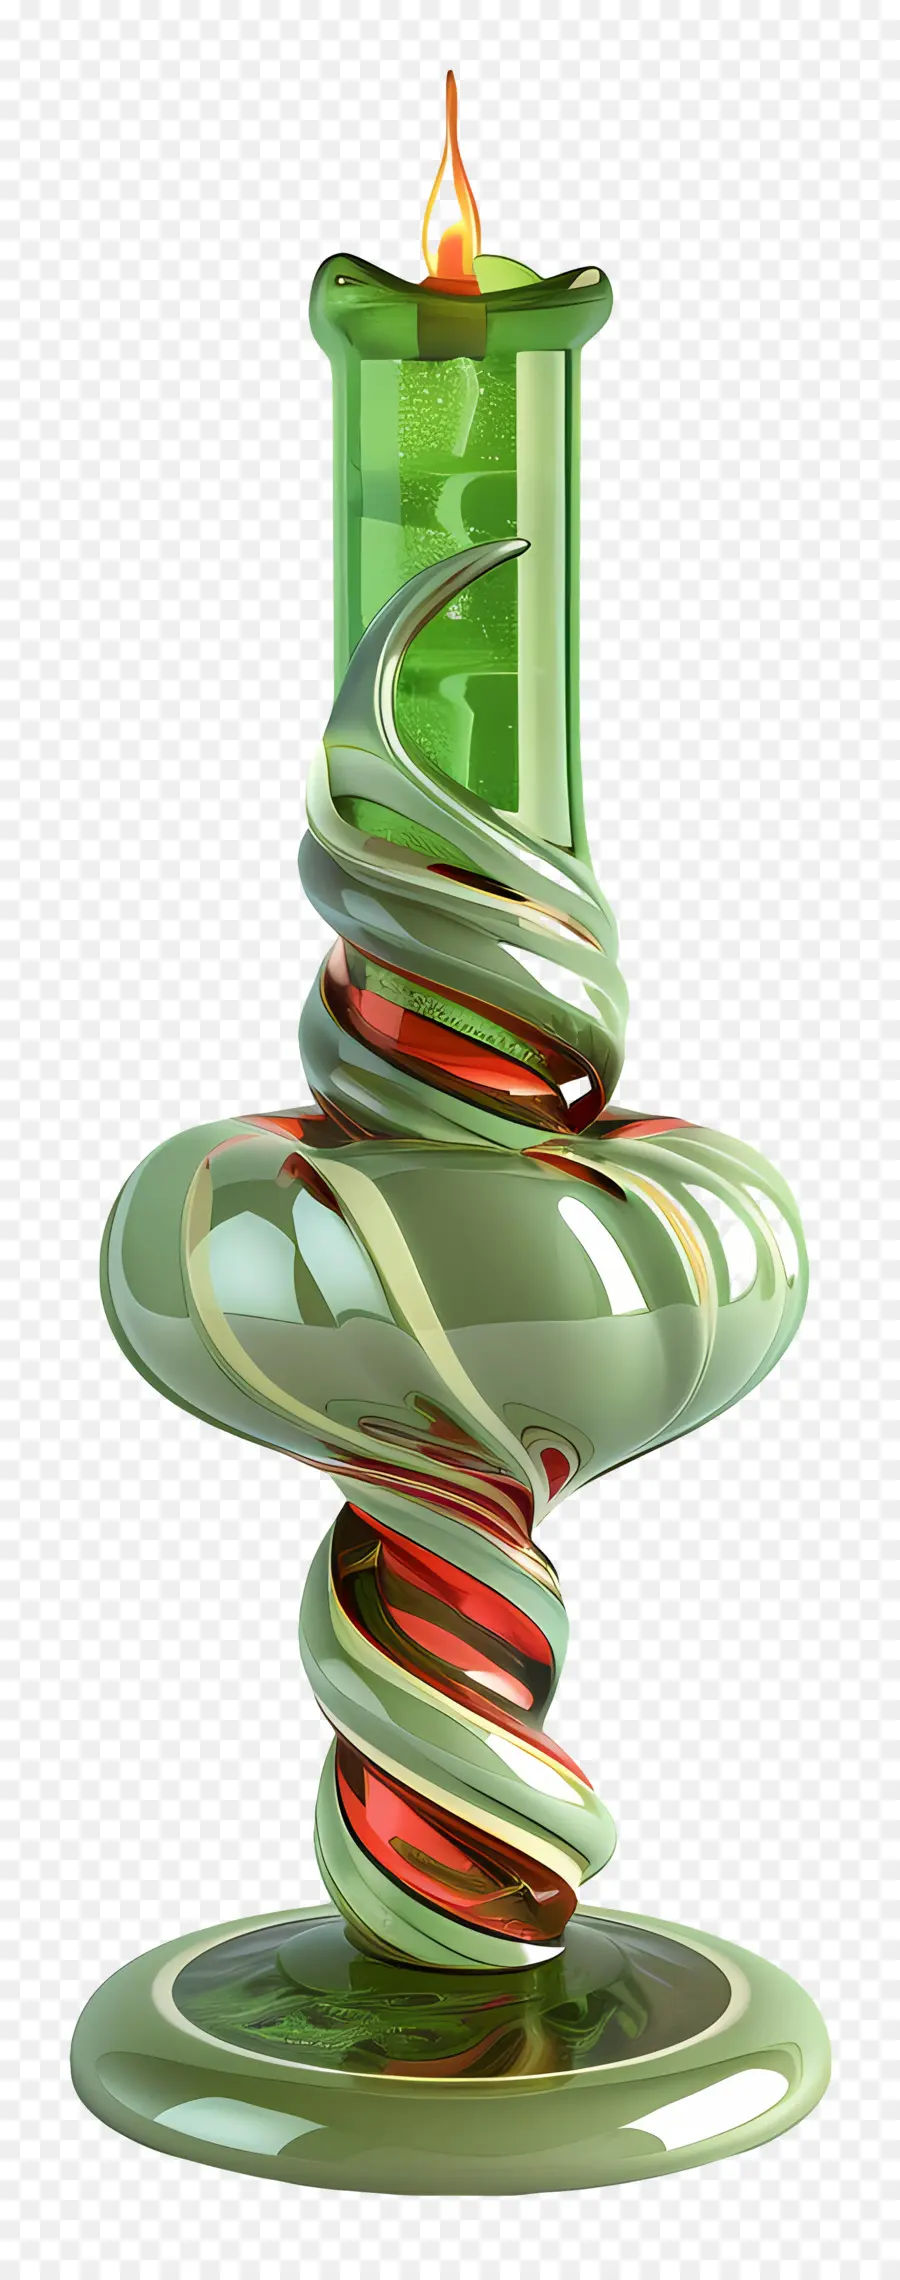 Glaskerzenhalterglas Kerzenhalter Grüne und rote Wirbeldesign runde Basis - Komplizierter wirbelnder grüner und rotes Glaskerzenhalter